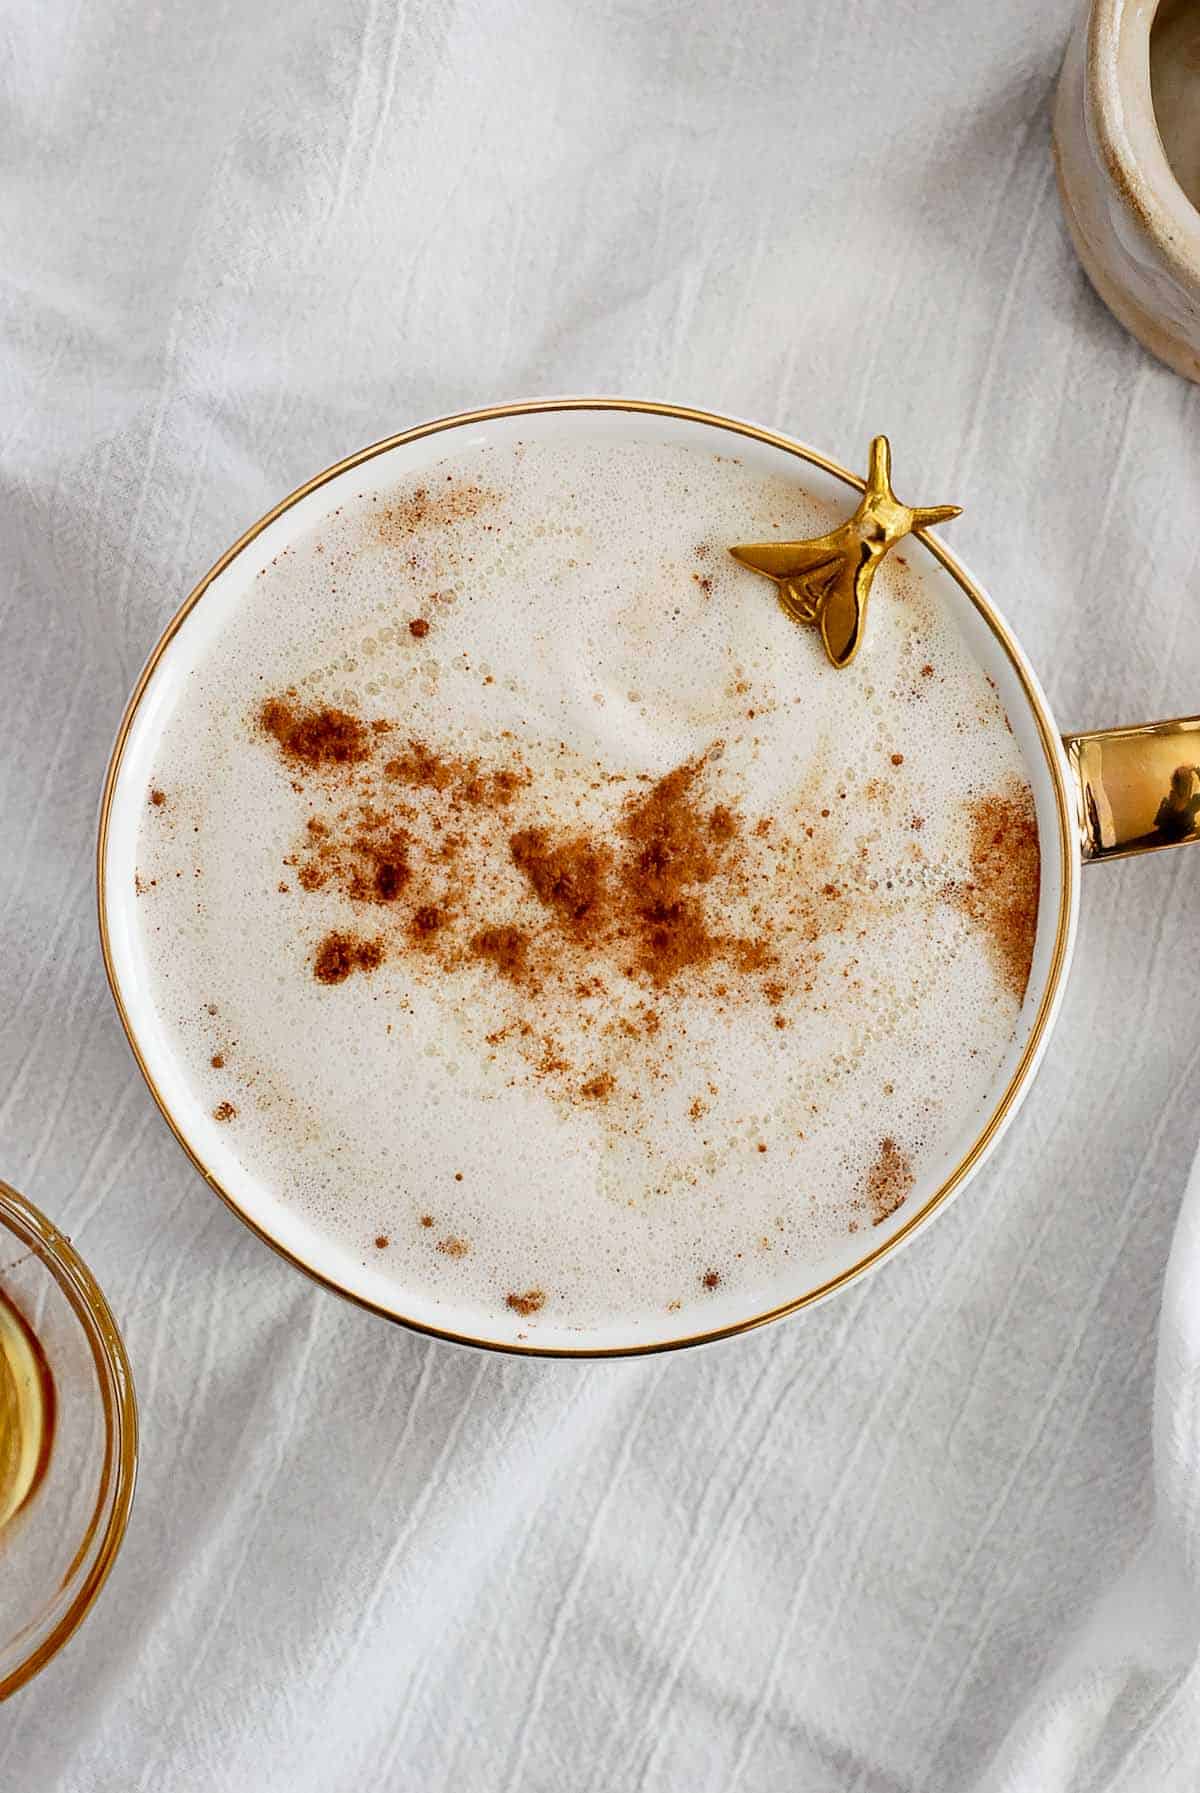 honey oatmilk latte in mug with spoon peeking out.